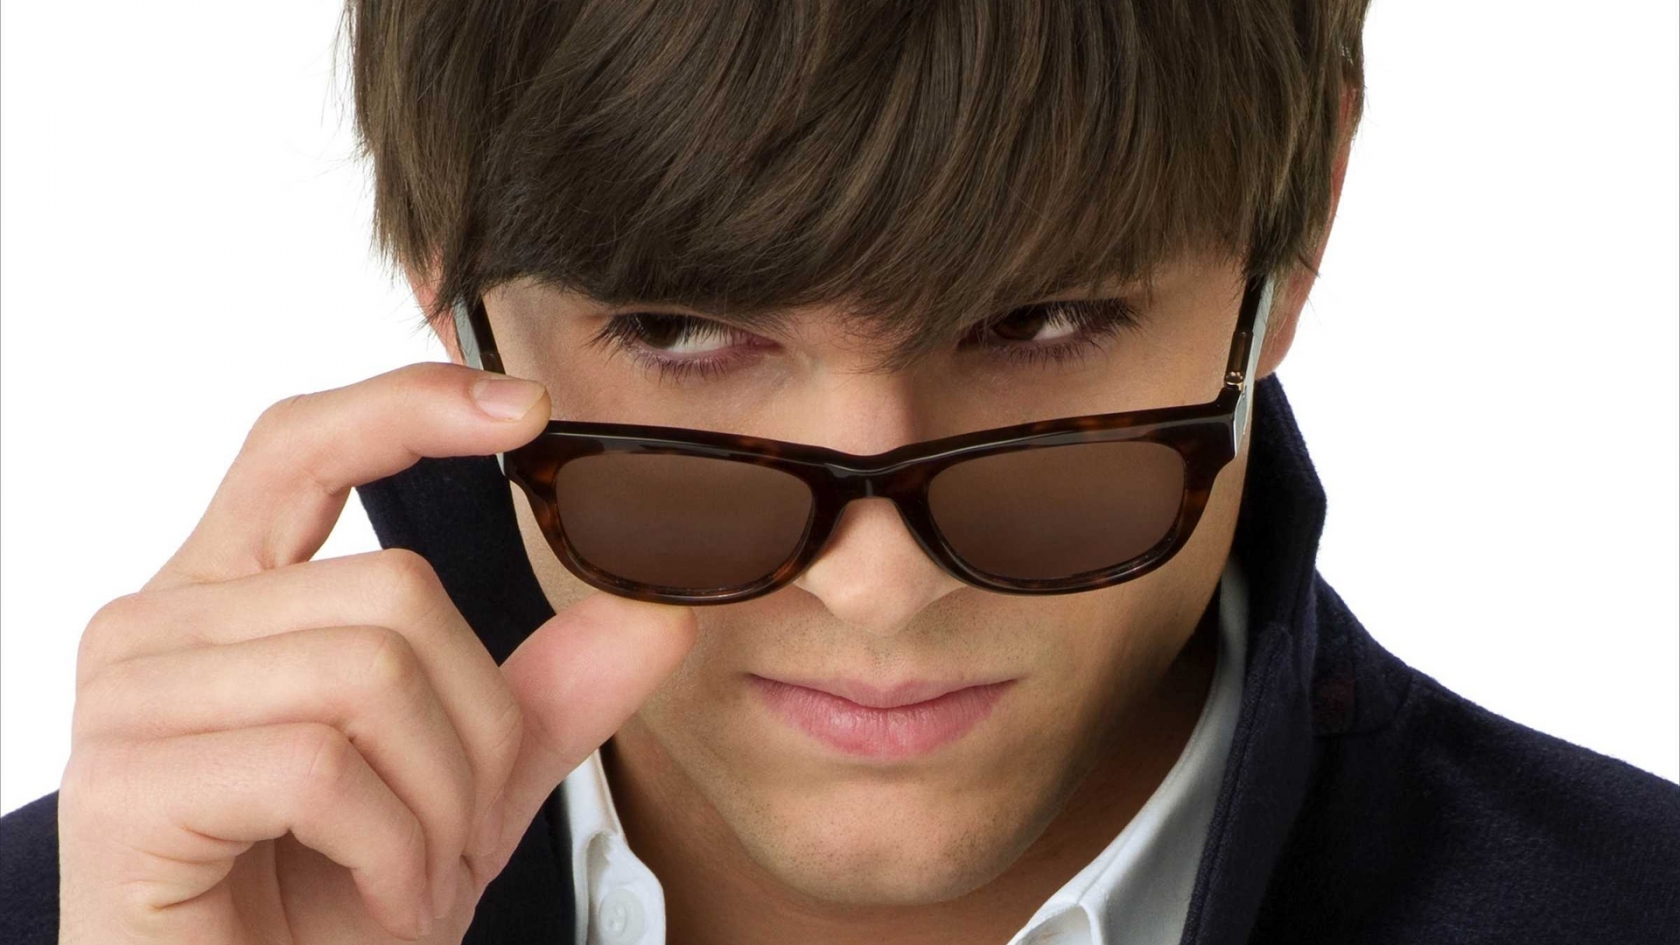 Ashton Kutcher with Sunglasses for 1680 x 945 HDTV resolution